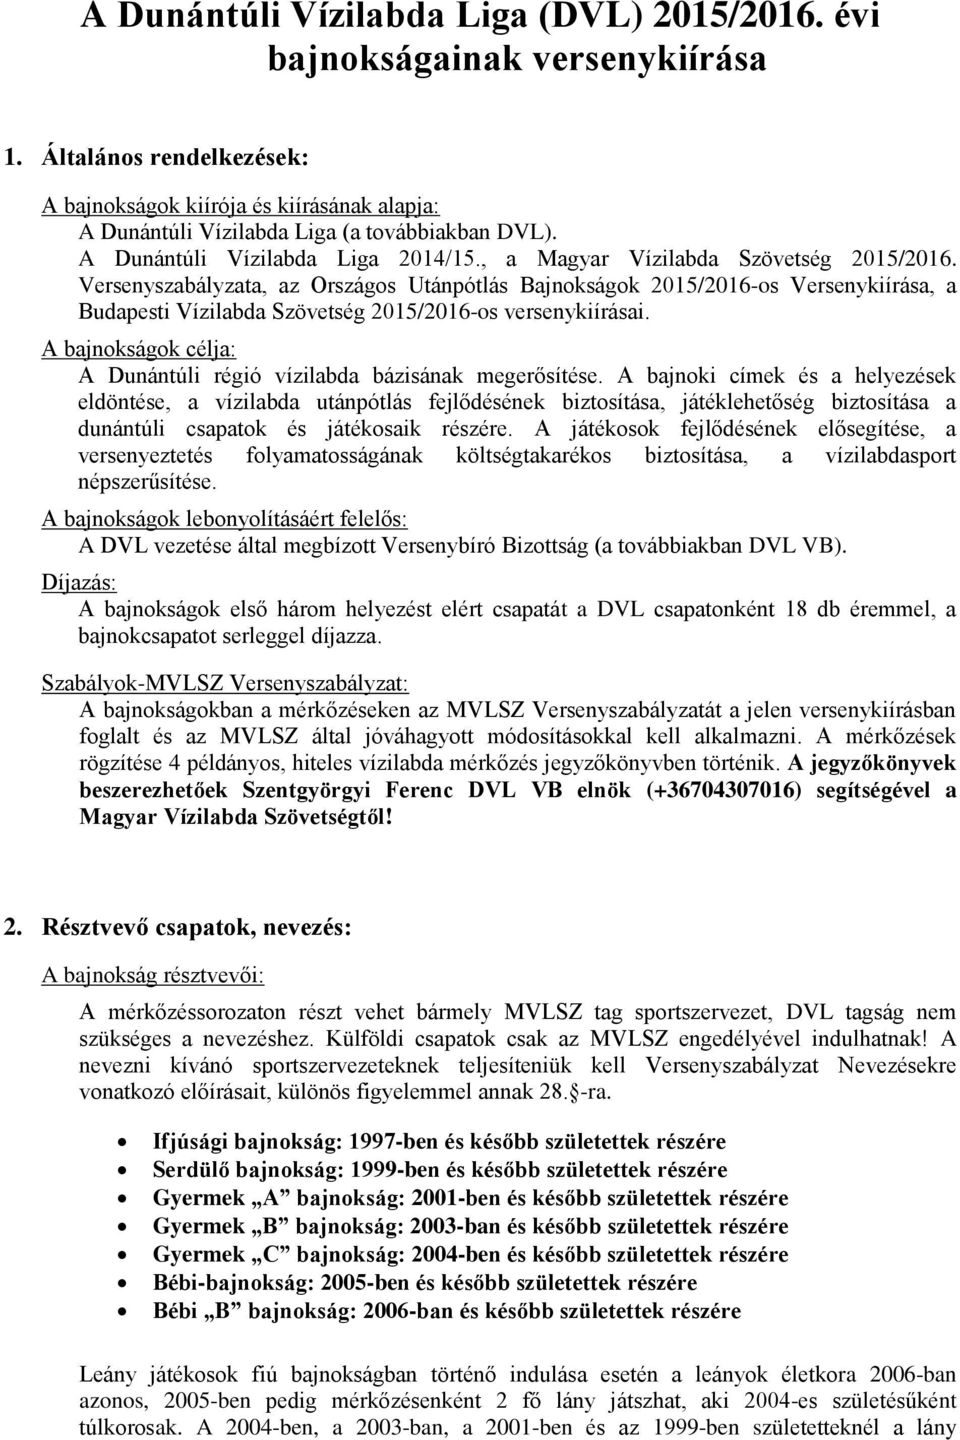 Versenyszabályzata, az Országos Utánpótlás Bajnokságok 2015/2016-os Versenykiírása, a Budapesti Vízilabda Szövetség 2015/2016-os versenykiírásai.